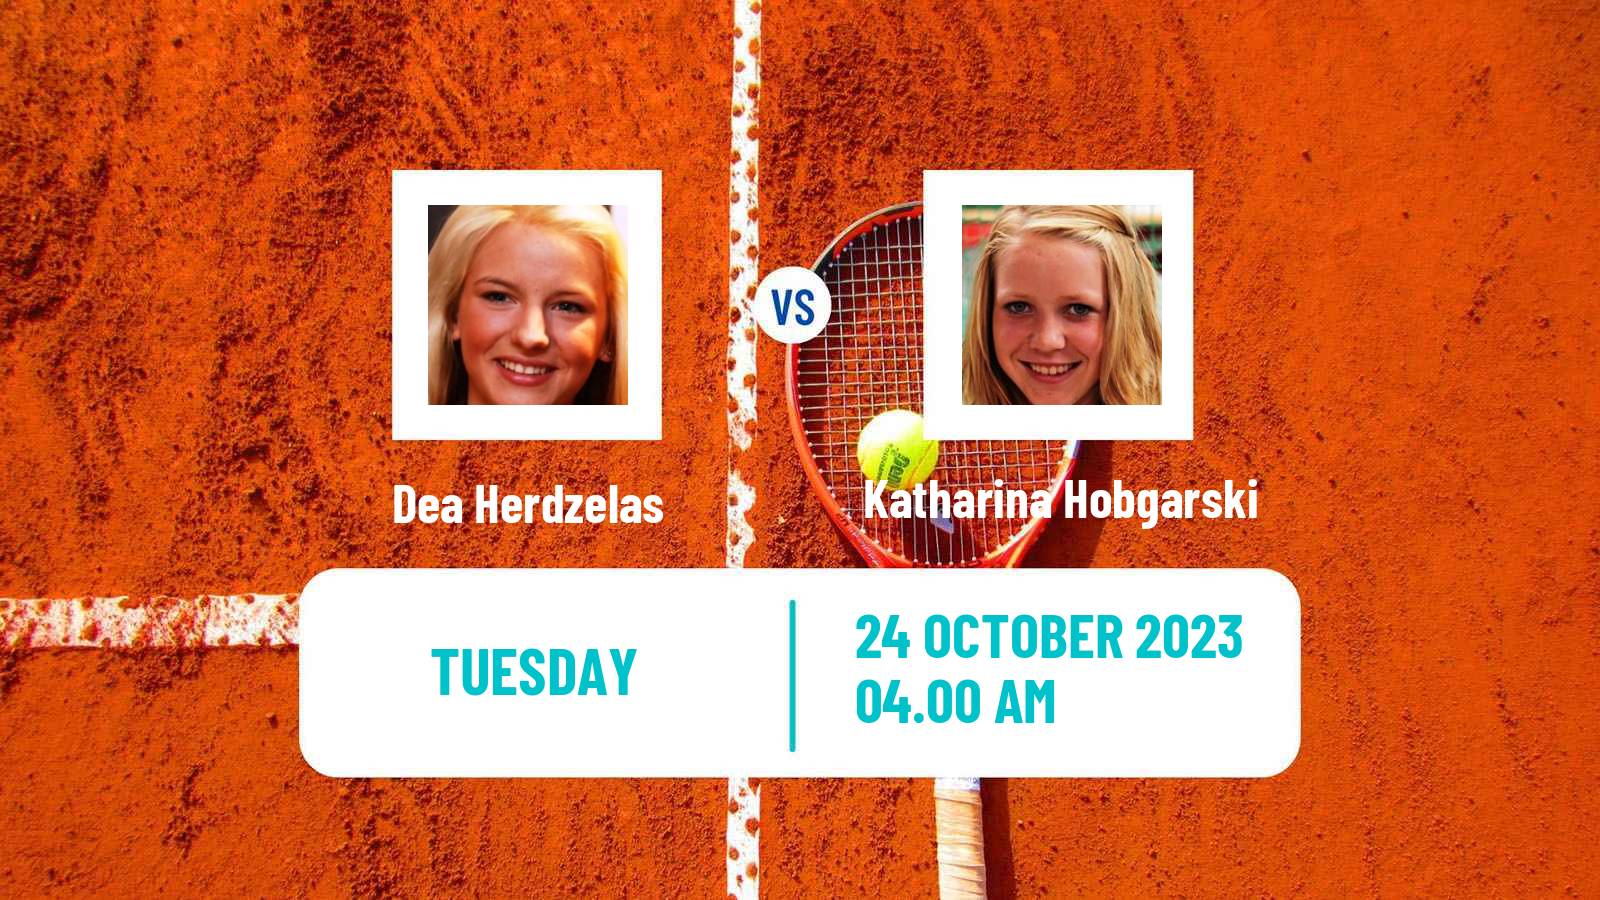 Tennis ITF W25 Santa Margherita Di Pula 12 Women 2023 Dea Herdzelas - Katharina Hobgarski